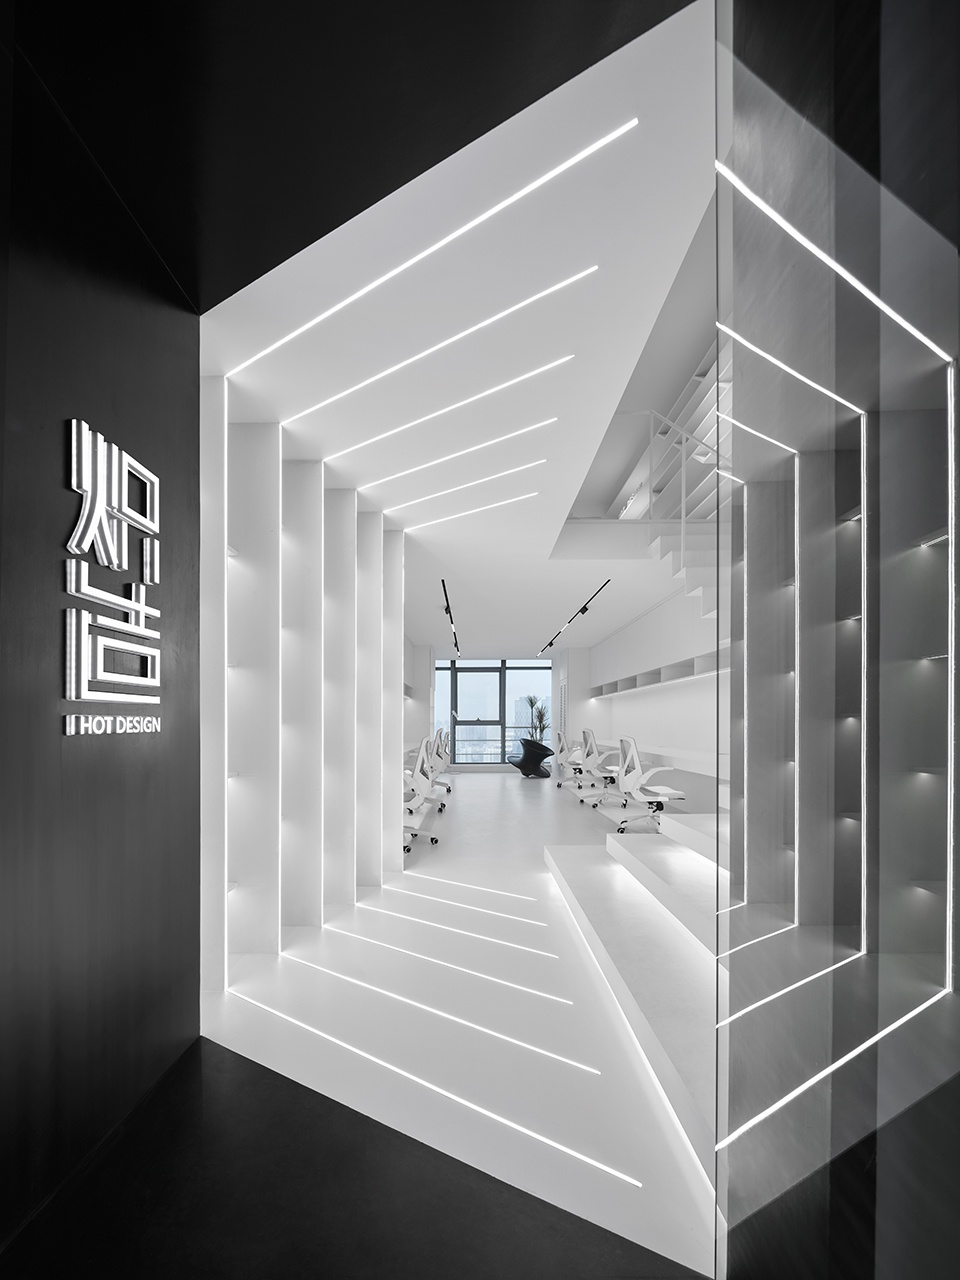 辦公室設計,設計公司辦公室設計,辦公空間設計,開放式辦公室設計,上海辦公室設計,上海設計工作辦公室設計,辦公室設計案例,熾造設計工作室,熾造設計,H.O.T Design熾造設計